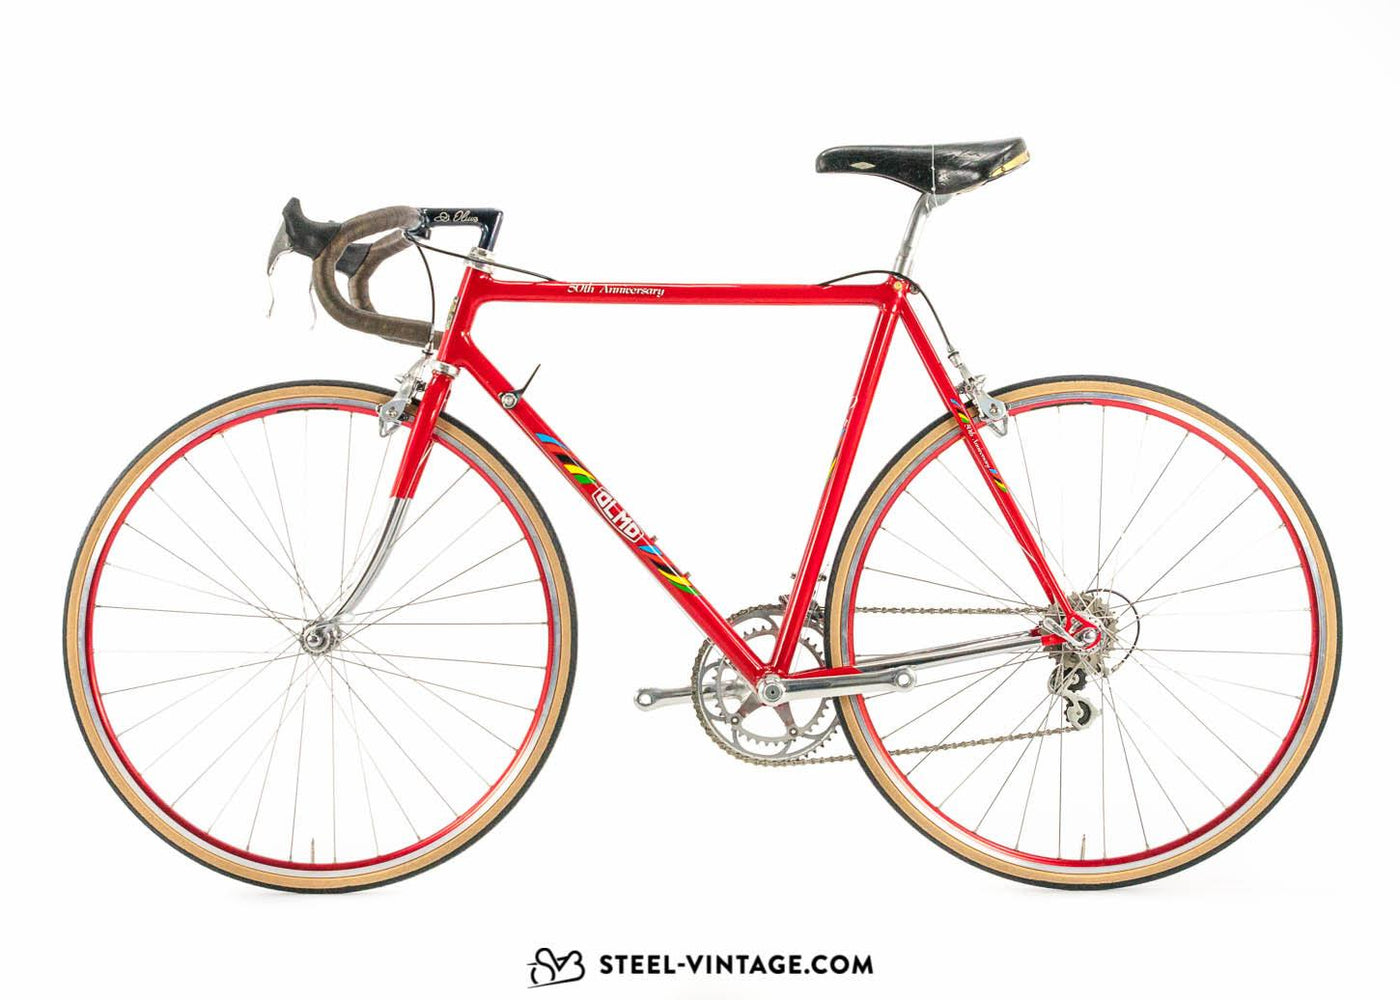 Olmo 50th Anniversary Limited Road Bicycle 1989 - Steel Vintage Bikes